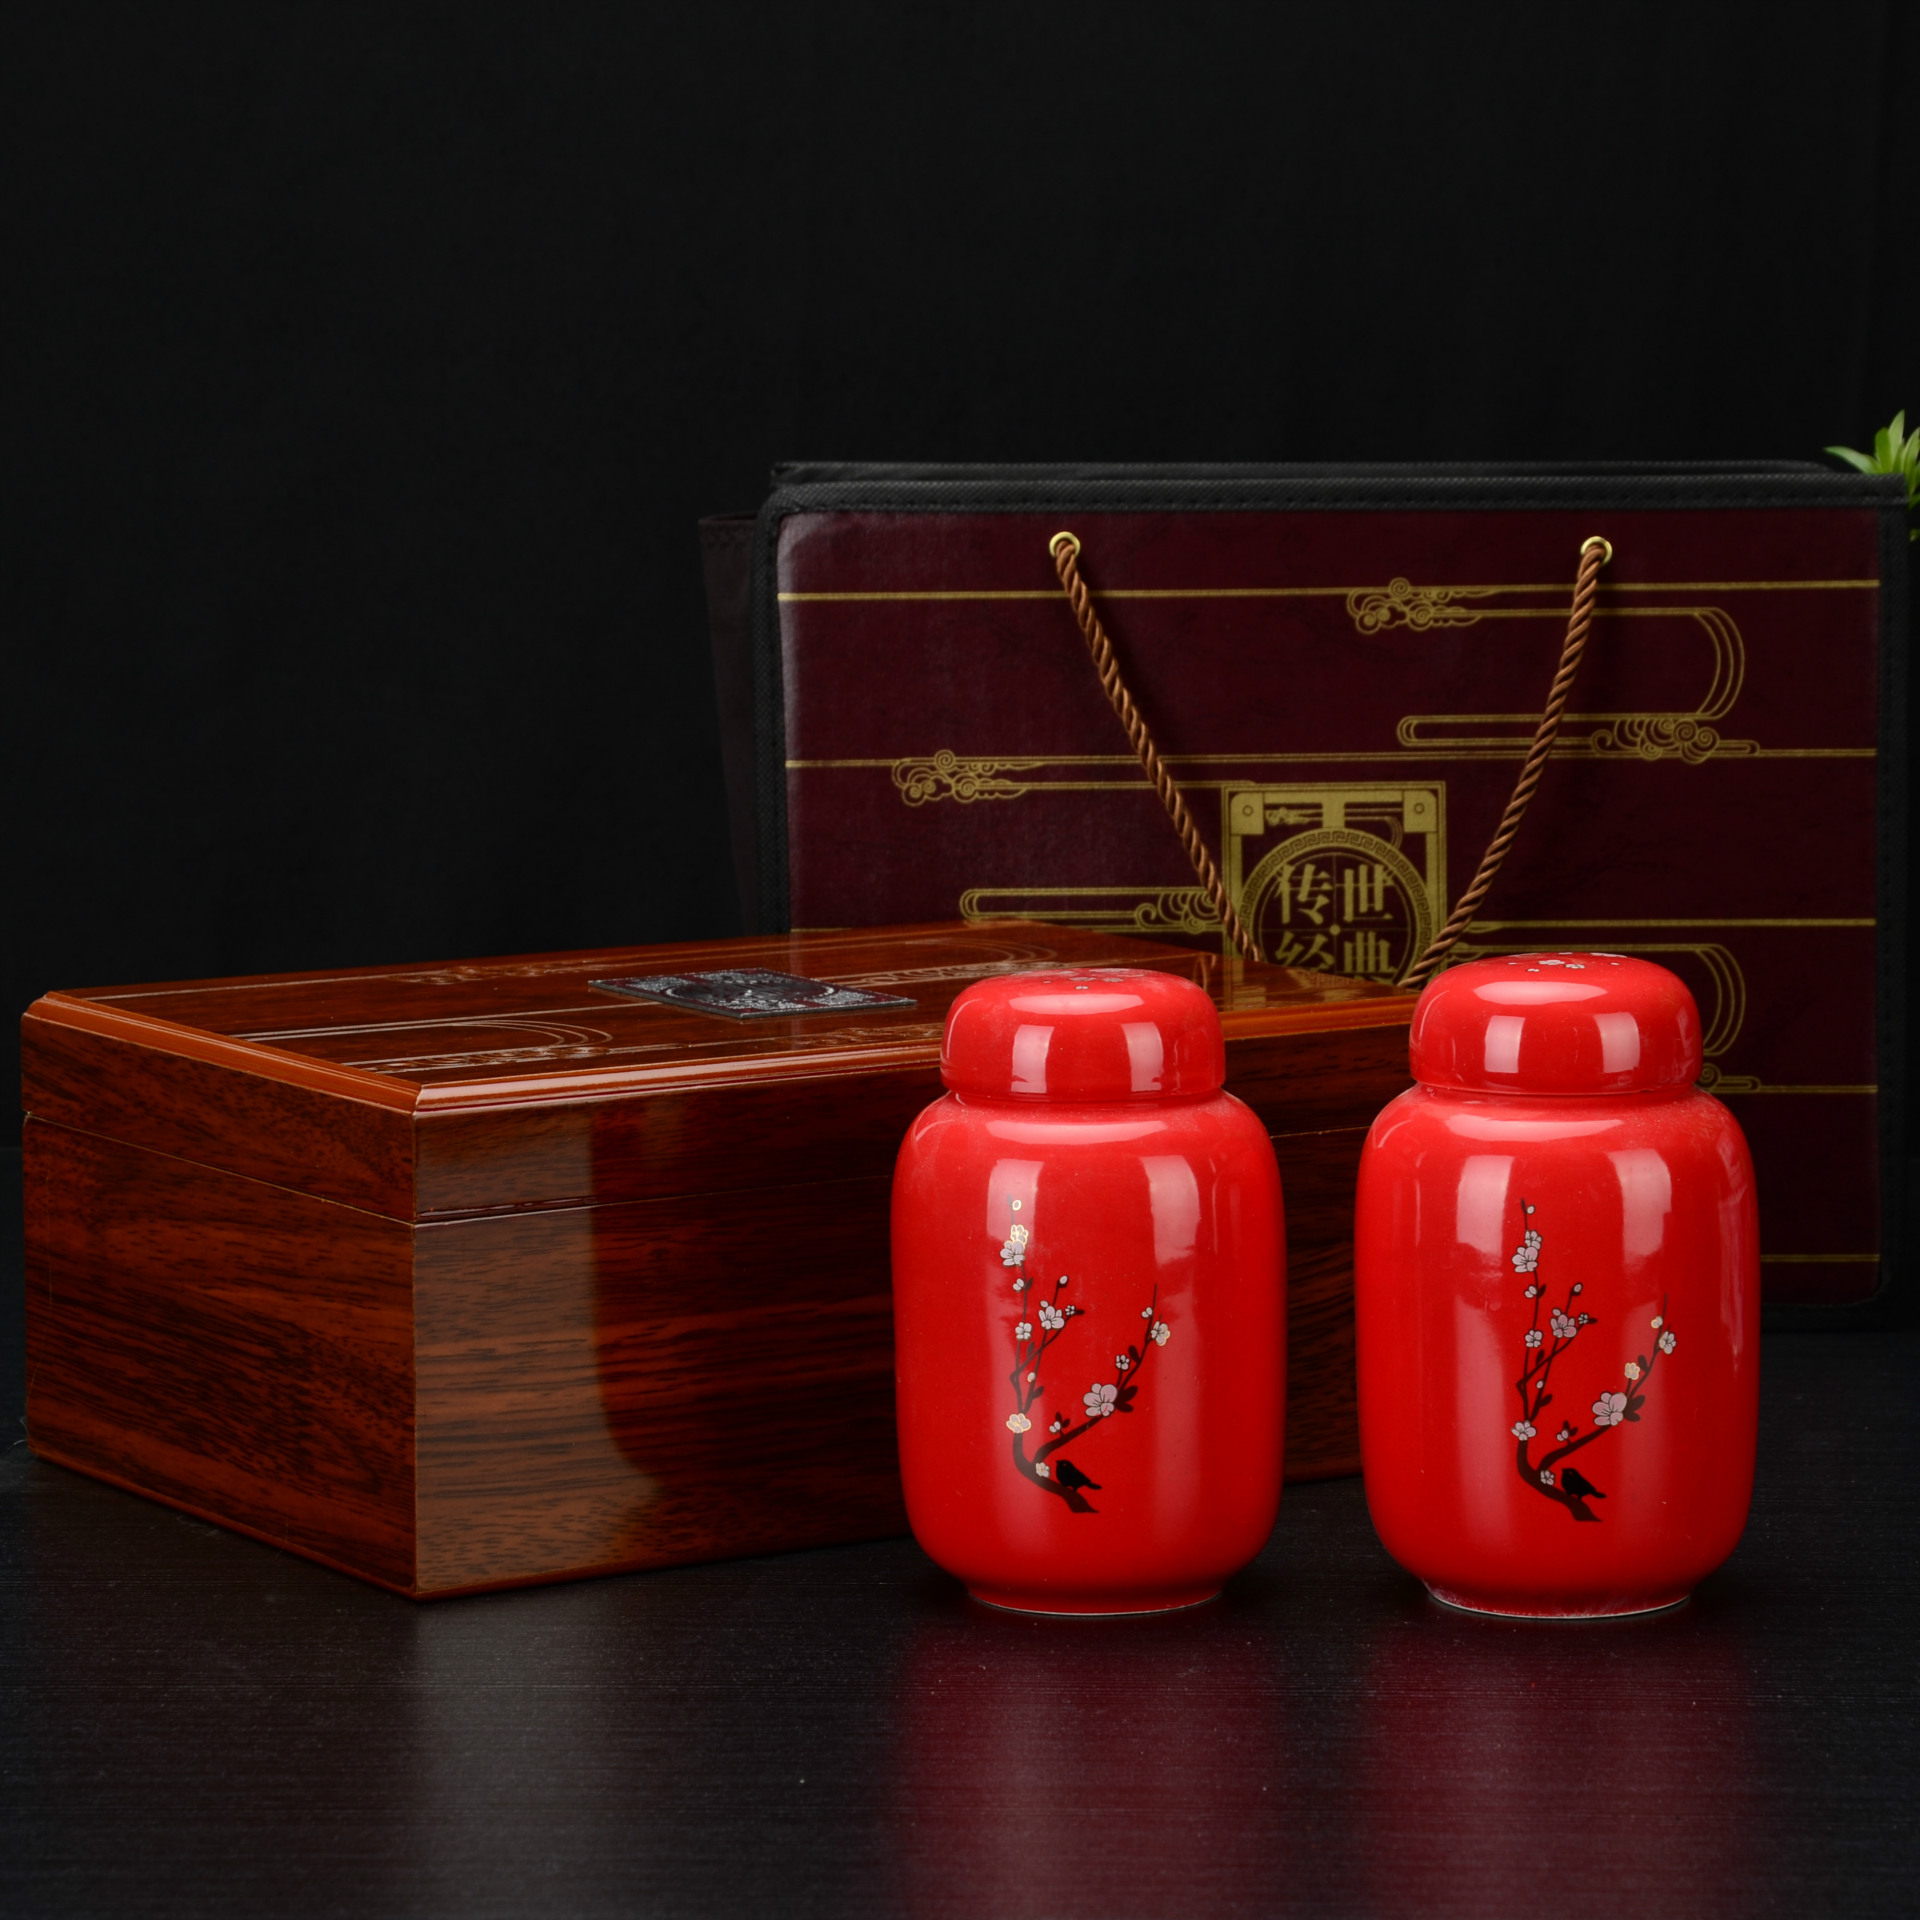 定做茶叶礼盒 高档红釉小号茶叶罐礼盒 木质红茶茶叶礼盒套装定制